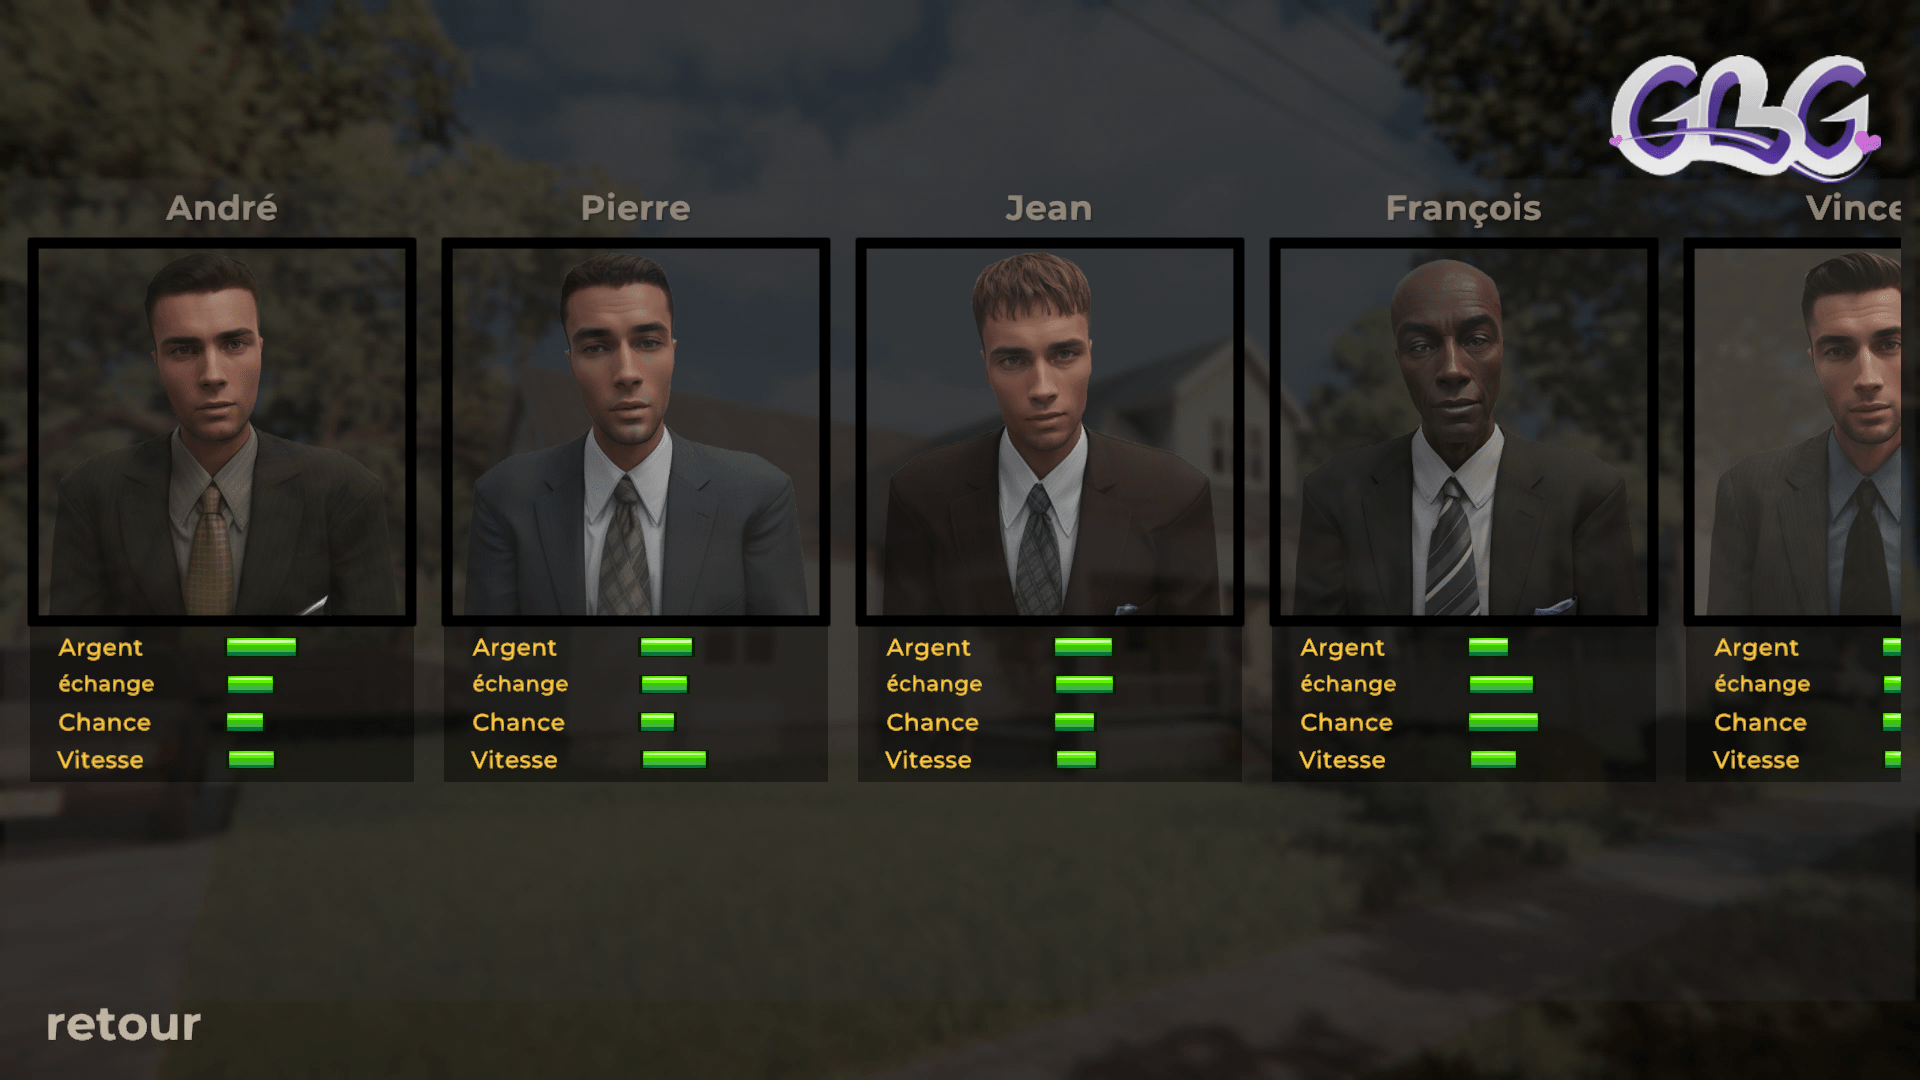 "Estate agent simulator" va vous faire choisir un personnage homme